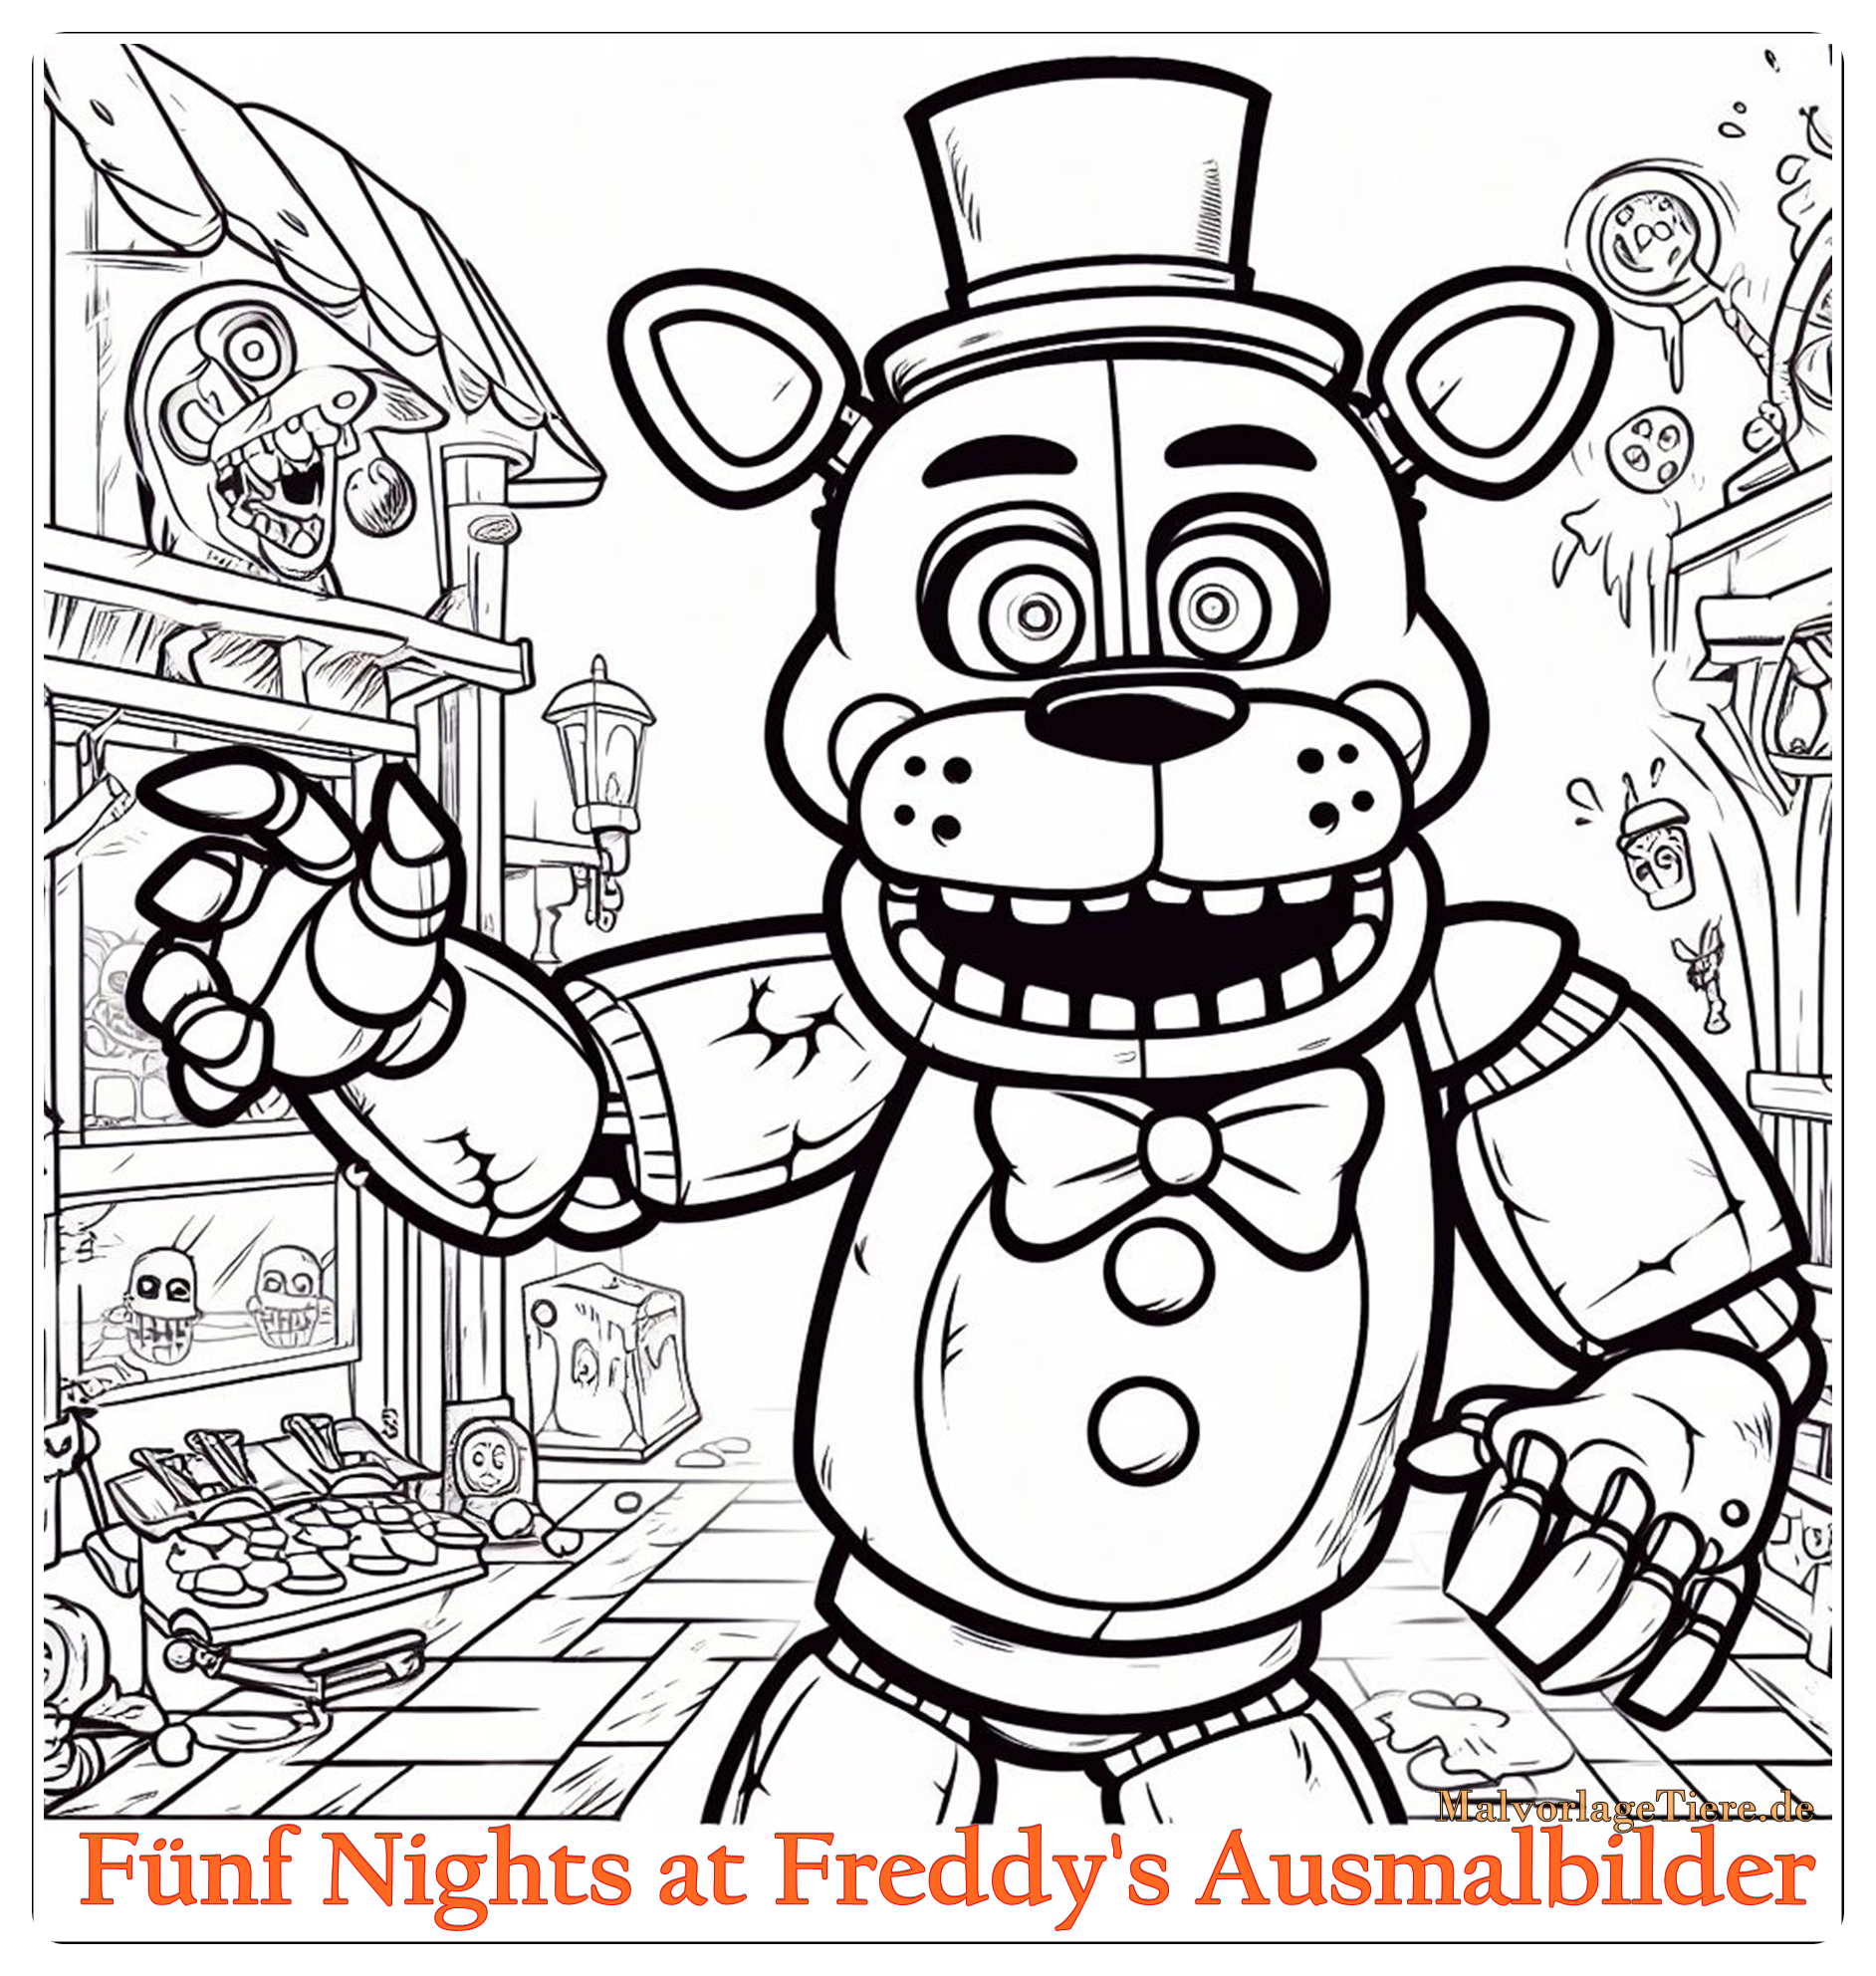 Fünf Nights at Freddy’s Ausmalbilder: Süßer Schrecken für Kinder